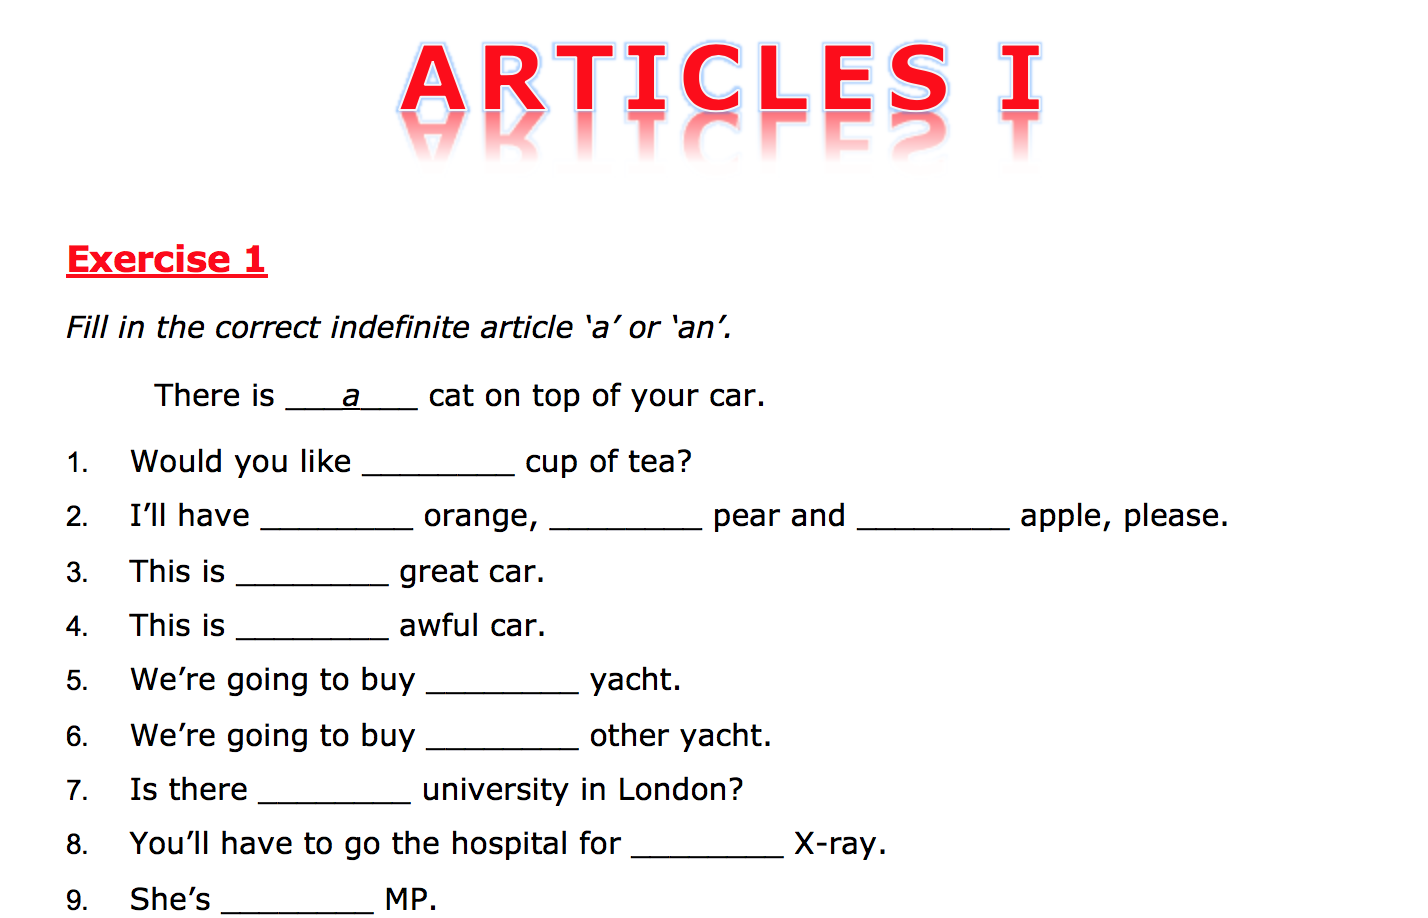 Keys to exercises. Задания на артикли. Articles упражнения. Артикли в английском языке Worksheets. Артикли Worksheets.